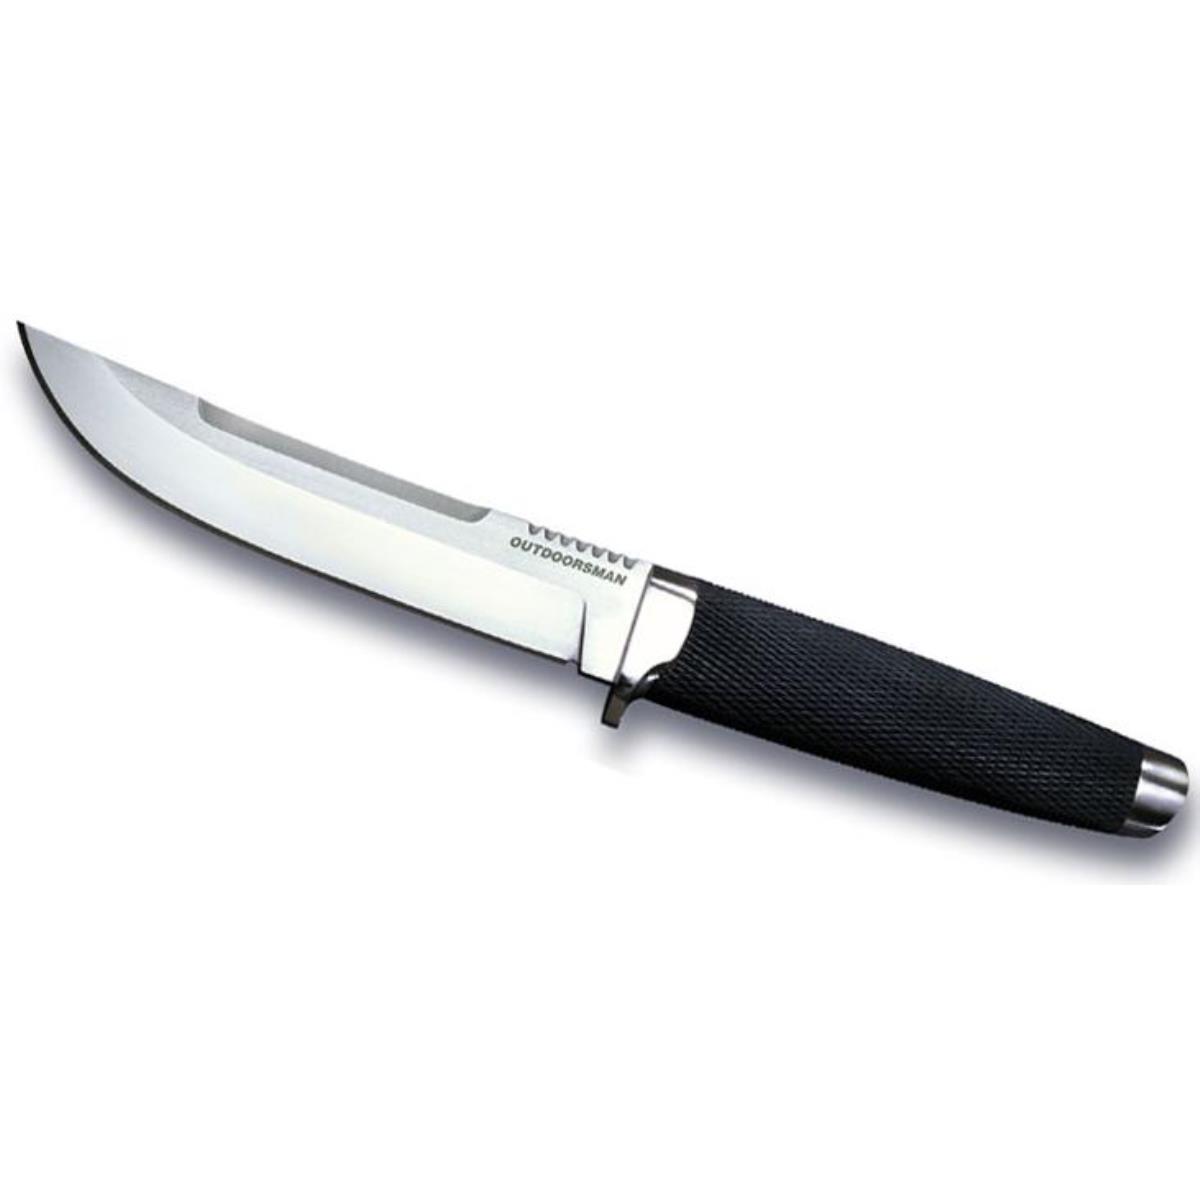 Нож VG-1 San Mai III, CS_18H Outdoorsman Cold Steel приправа maggi на второе куриная грудка с томатами и базиликом 30 г